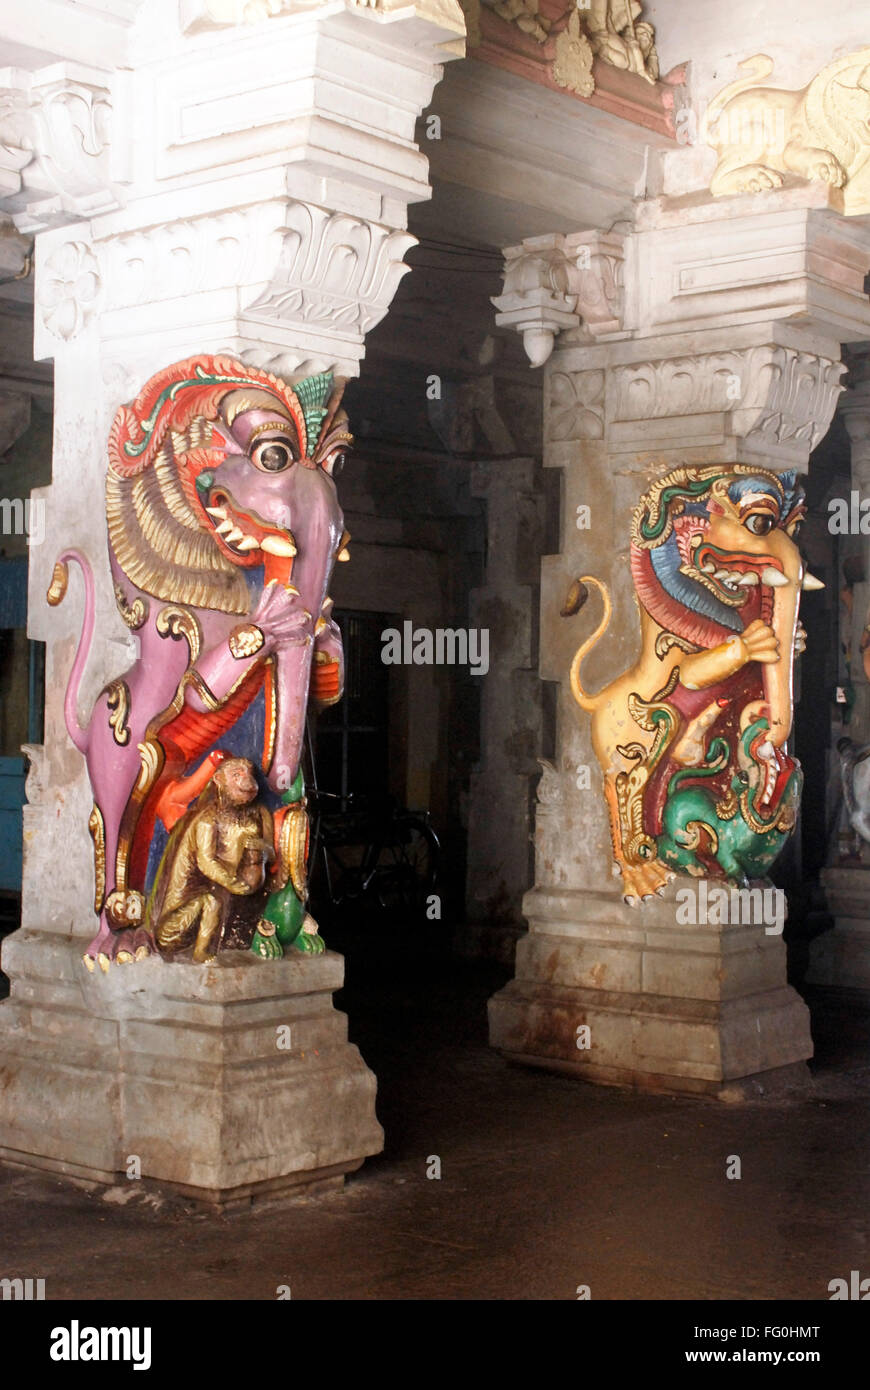 Reich geschnitzte und bunt bemalte kämpfen der mythologische Tiere am Pfeiler des Ramanathswami Tempels, Tamil Nadu, Indien Stockfoto